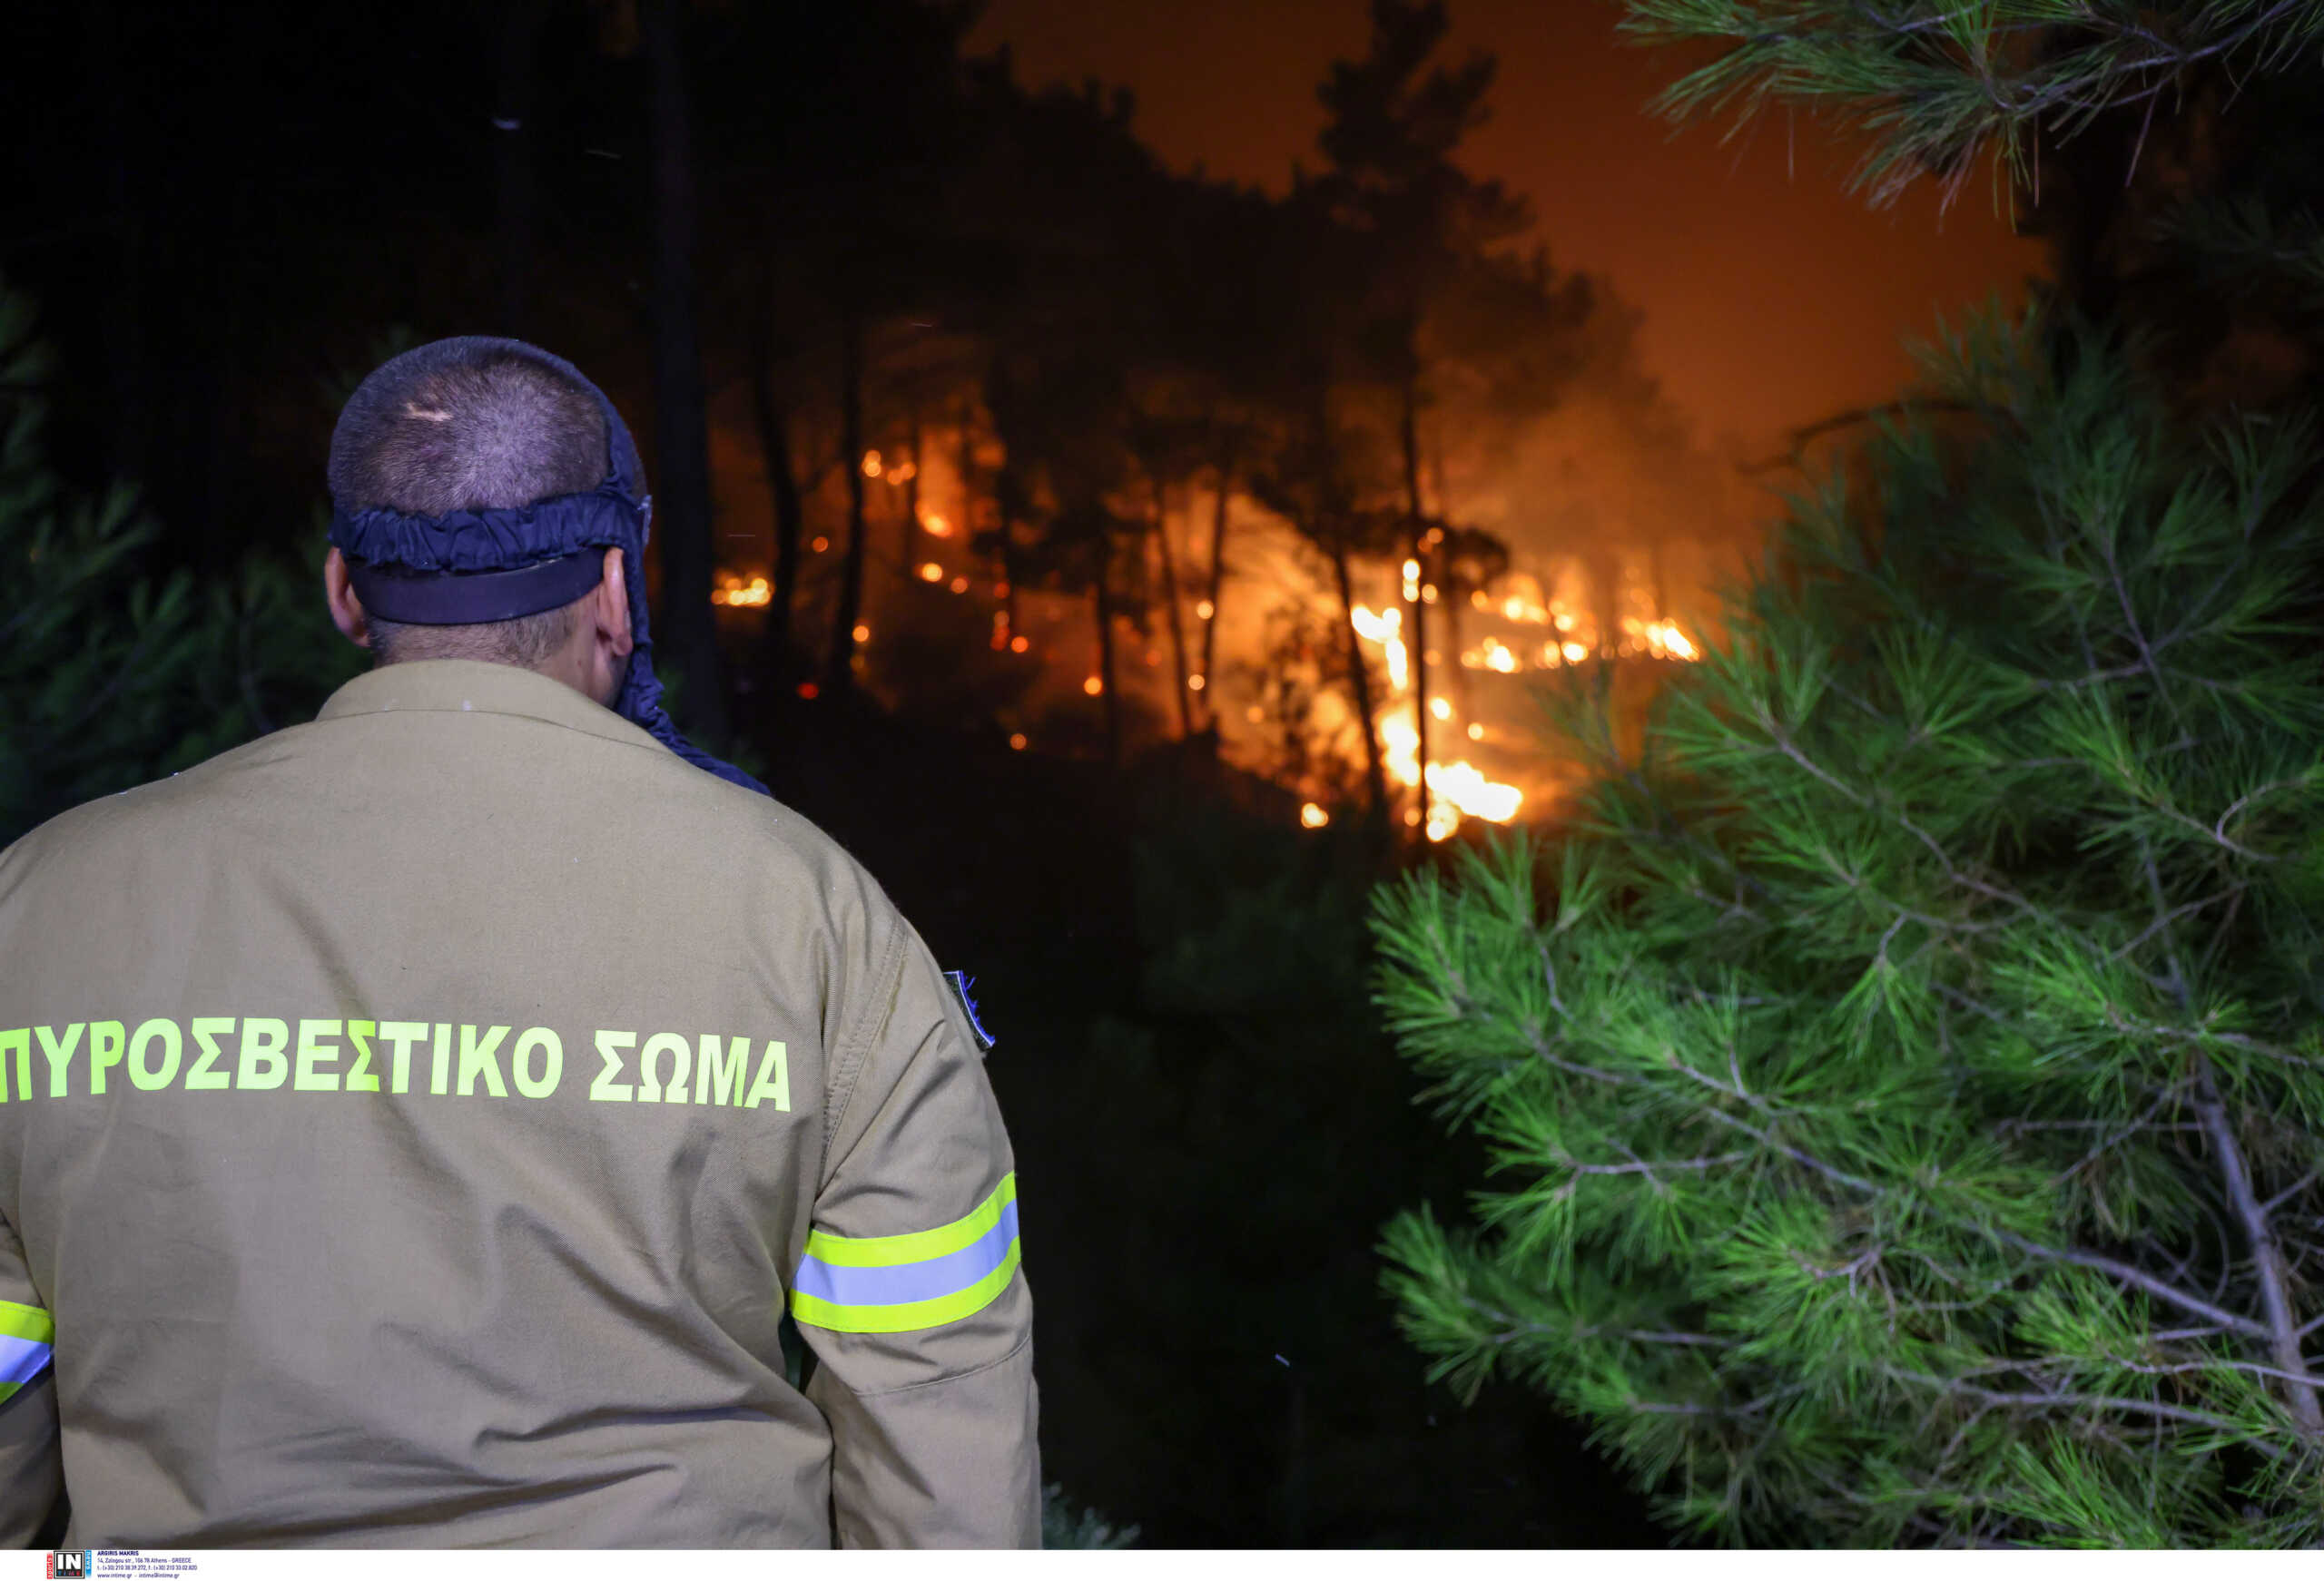 Πυροσβεστική: Συνολικά 38 φωτιές σε δάση ξέσπασαν μέσα σε ένα 24ωρο